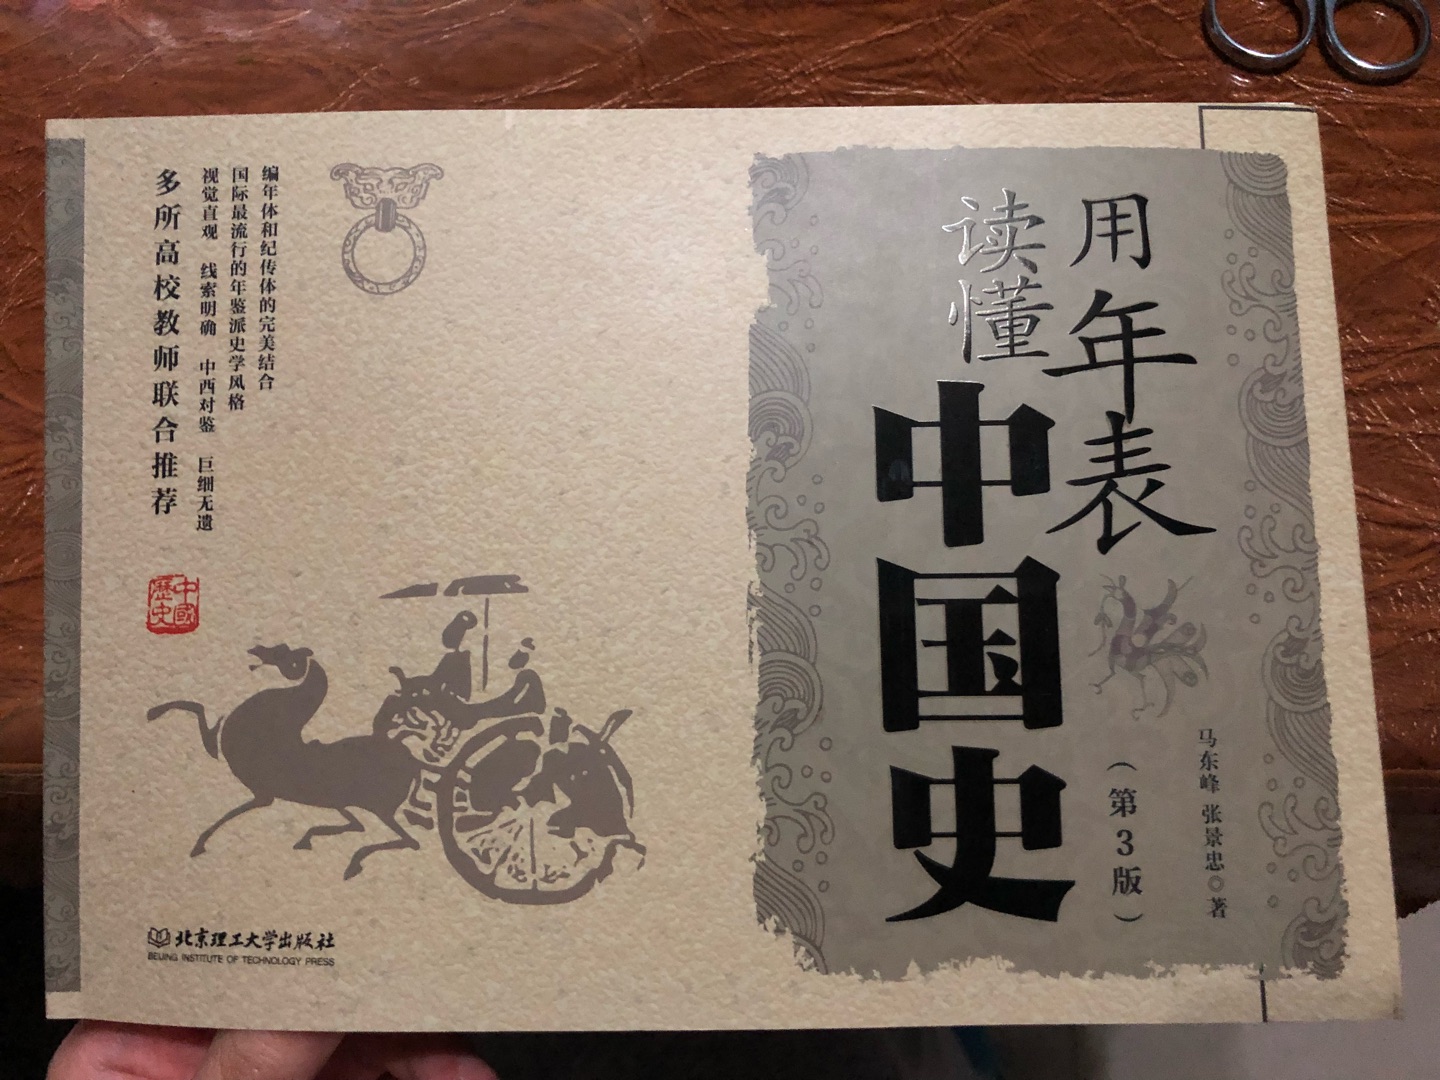 正品书，还过了塑封，纸张印刷都很不错，这本书太实用了，中国历史一目了然